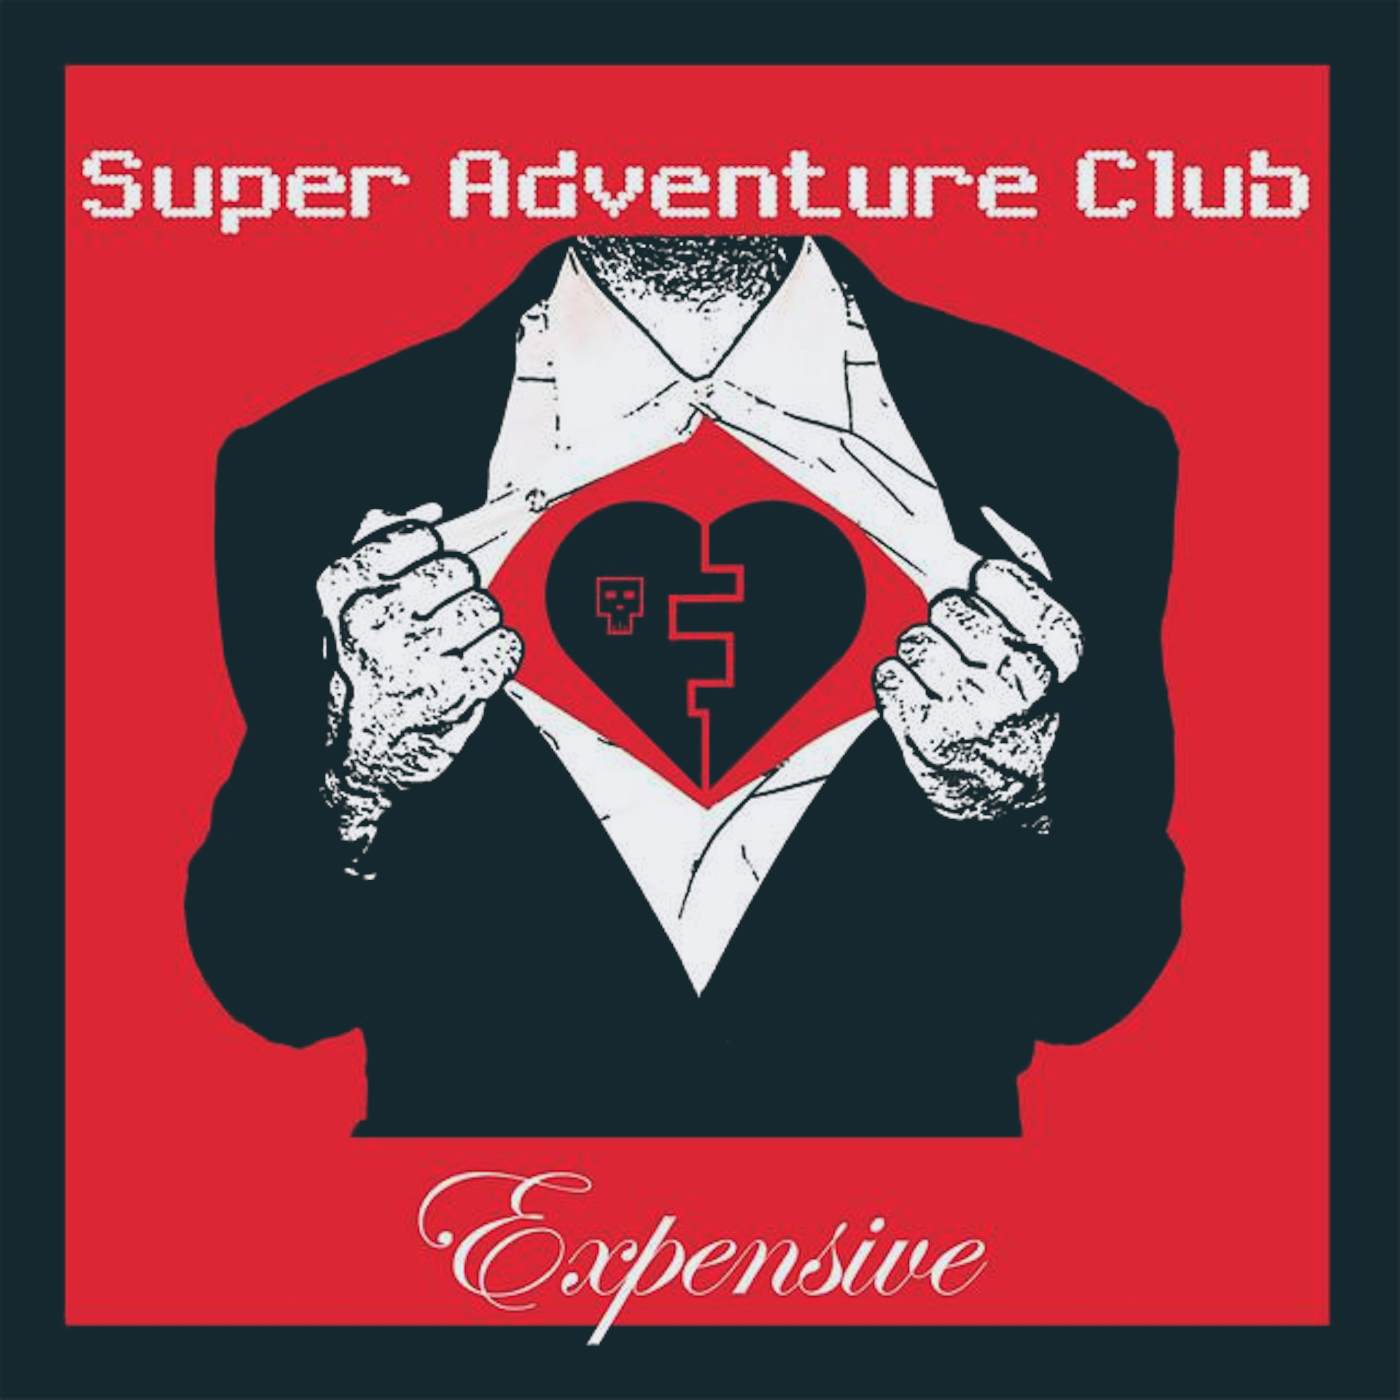 Super Adventure Club